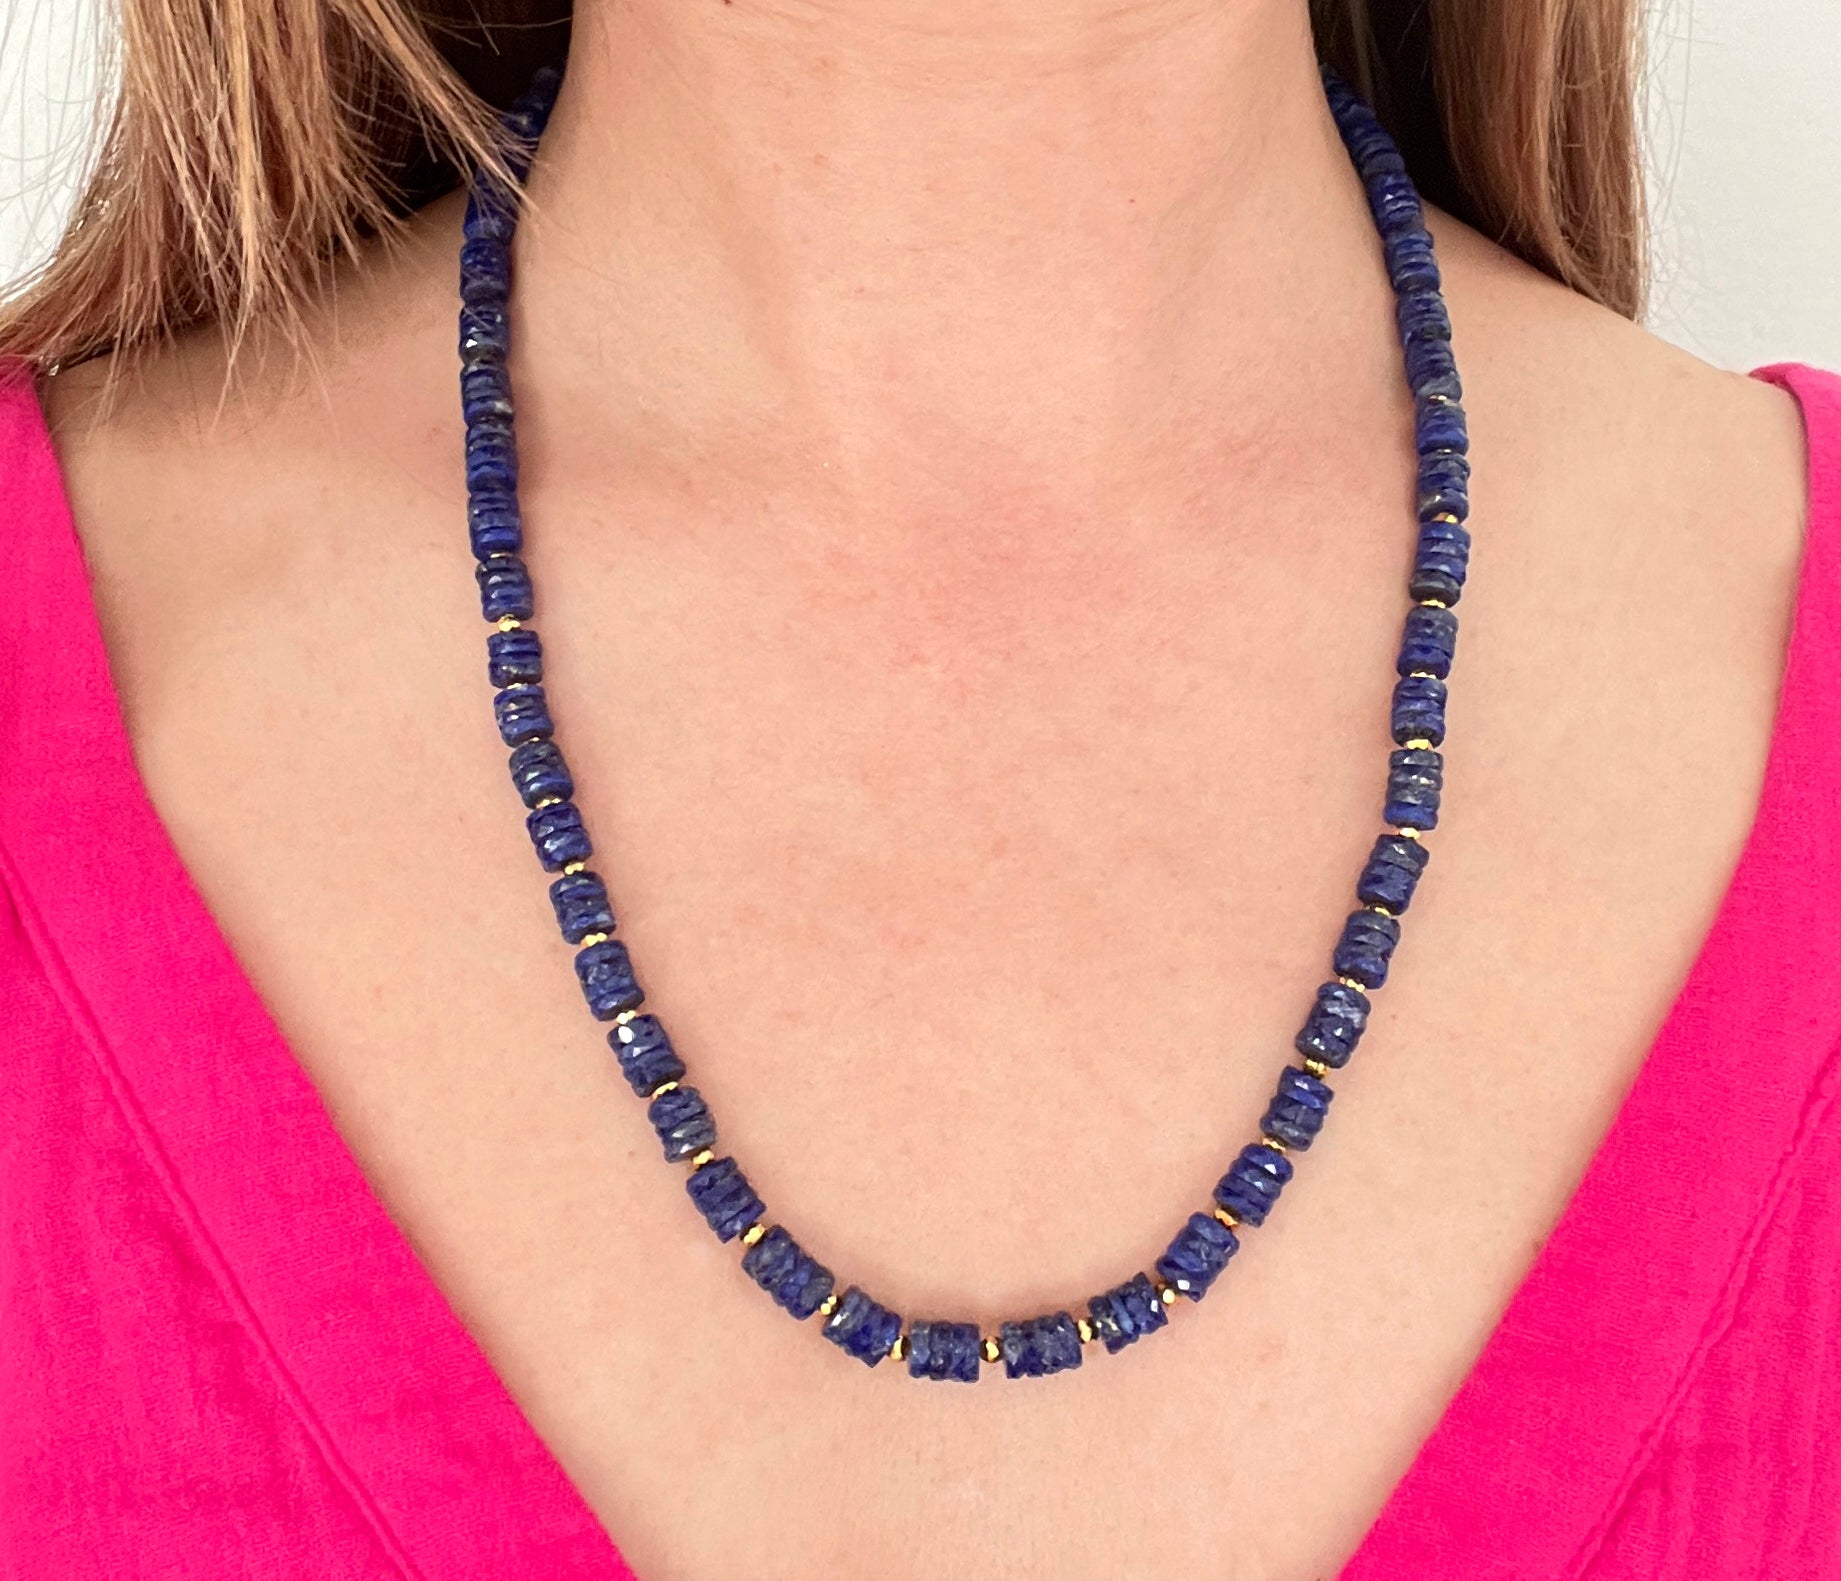 Lapis lazuli faceted heishi necklace - Amaria Studio